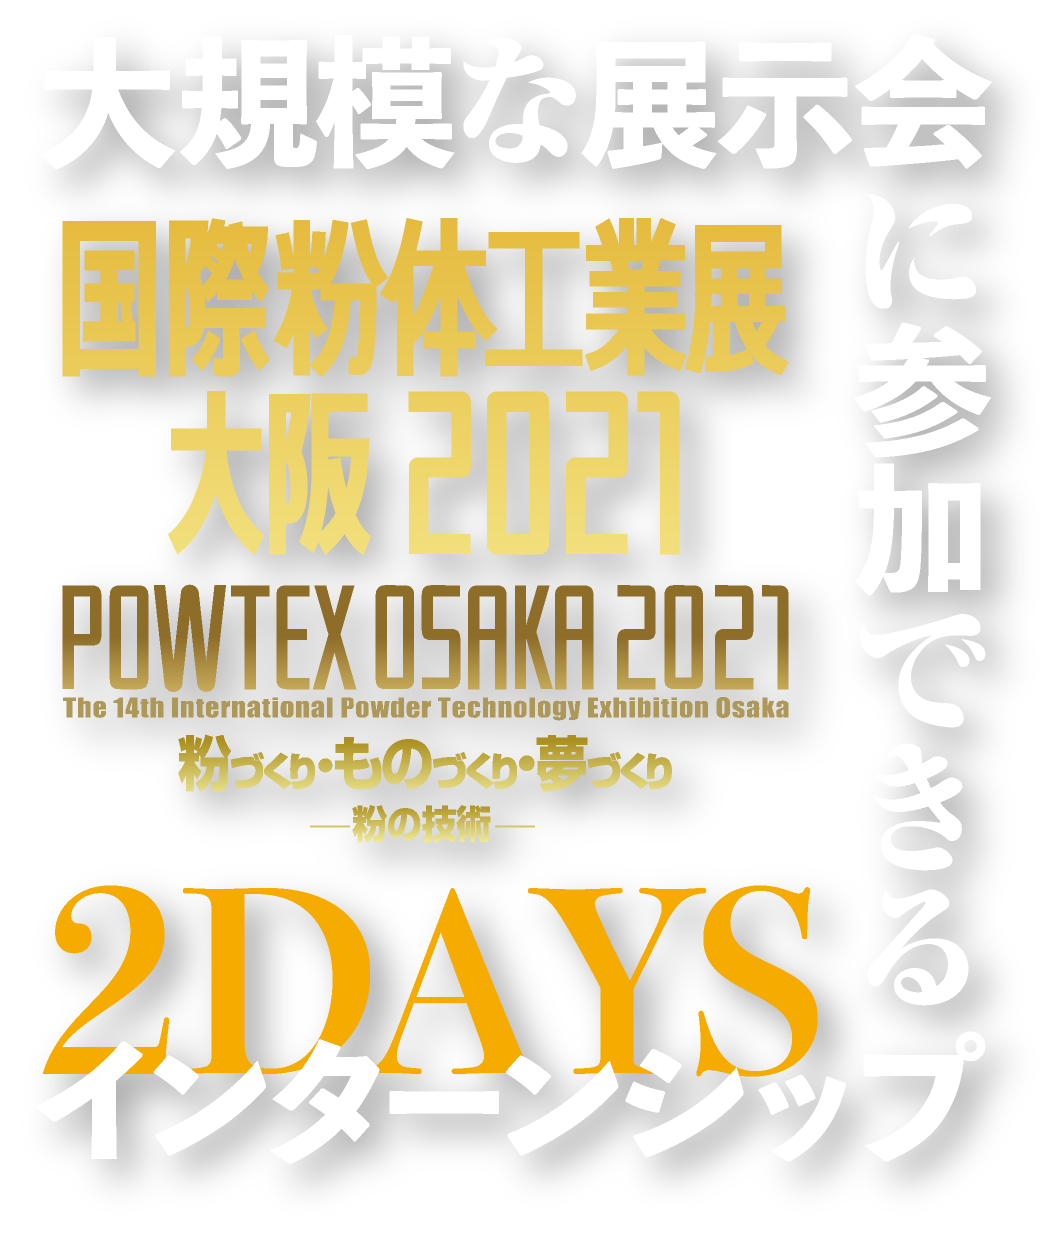 国際粉体工業展 大阪 2021,大規模な展示会に参加できる2DAYSインターンシップ